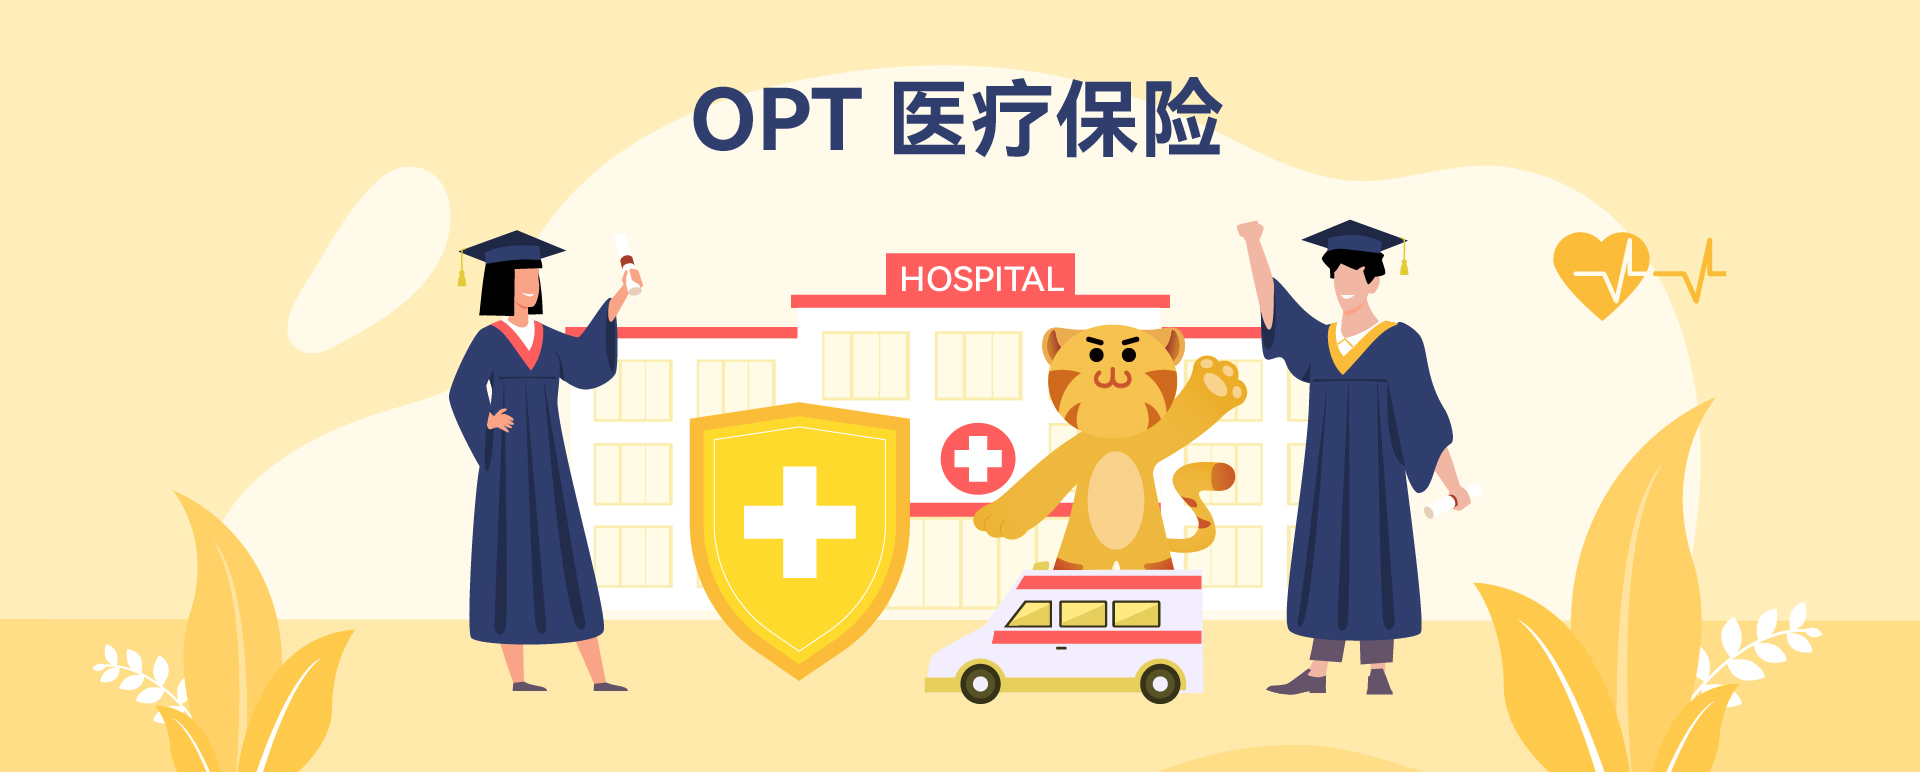 OPT医疗保险